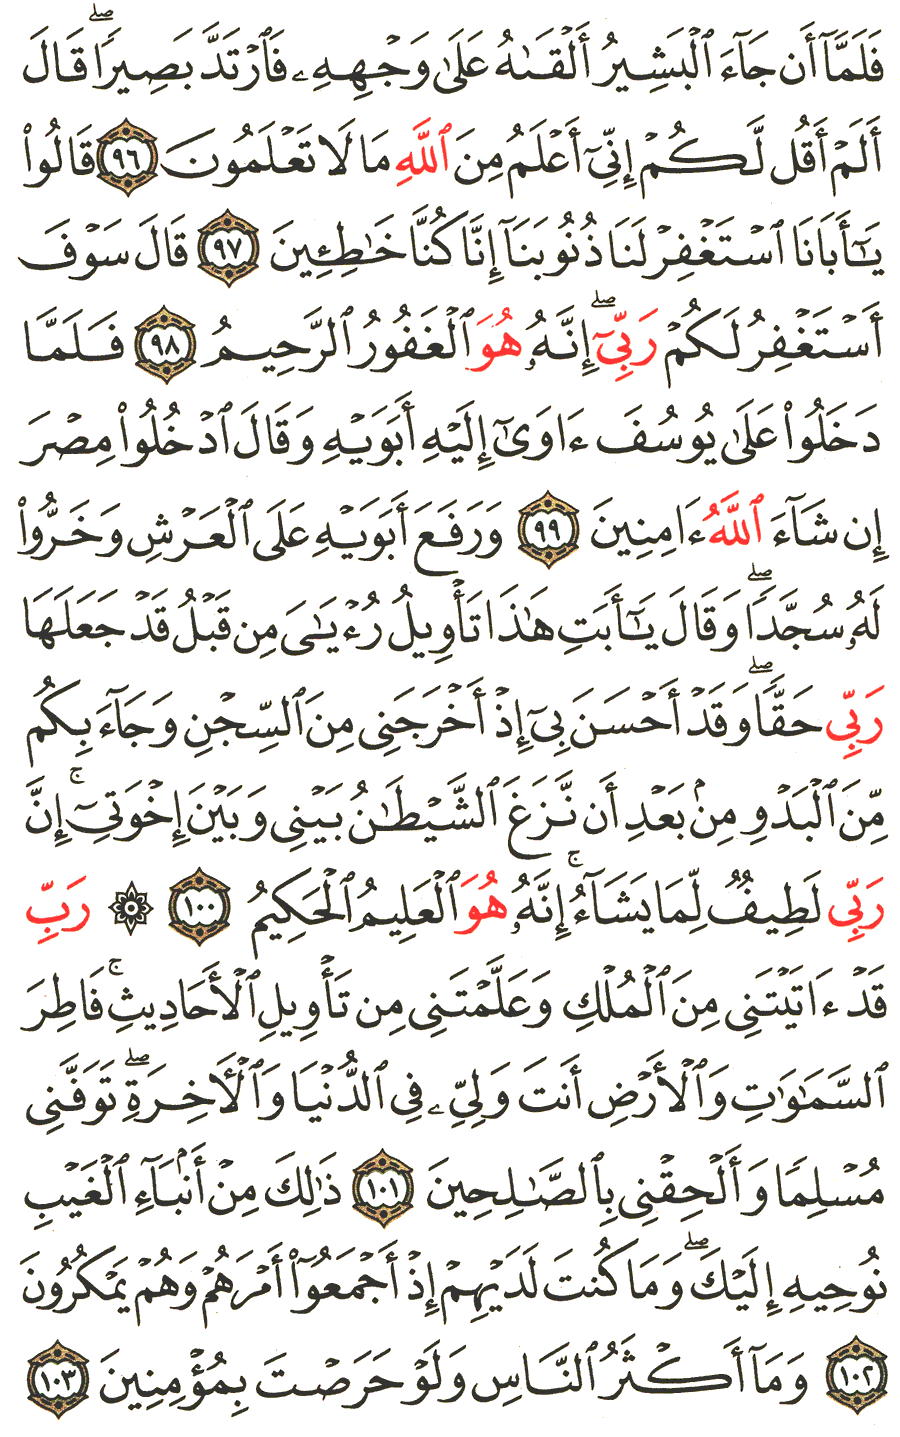 الصفحة رقم 247  من القرآن الكريم مكتوبة من المصحف